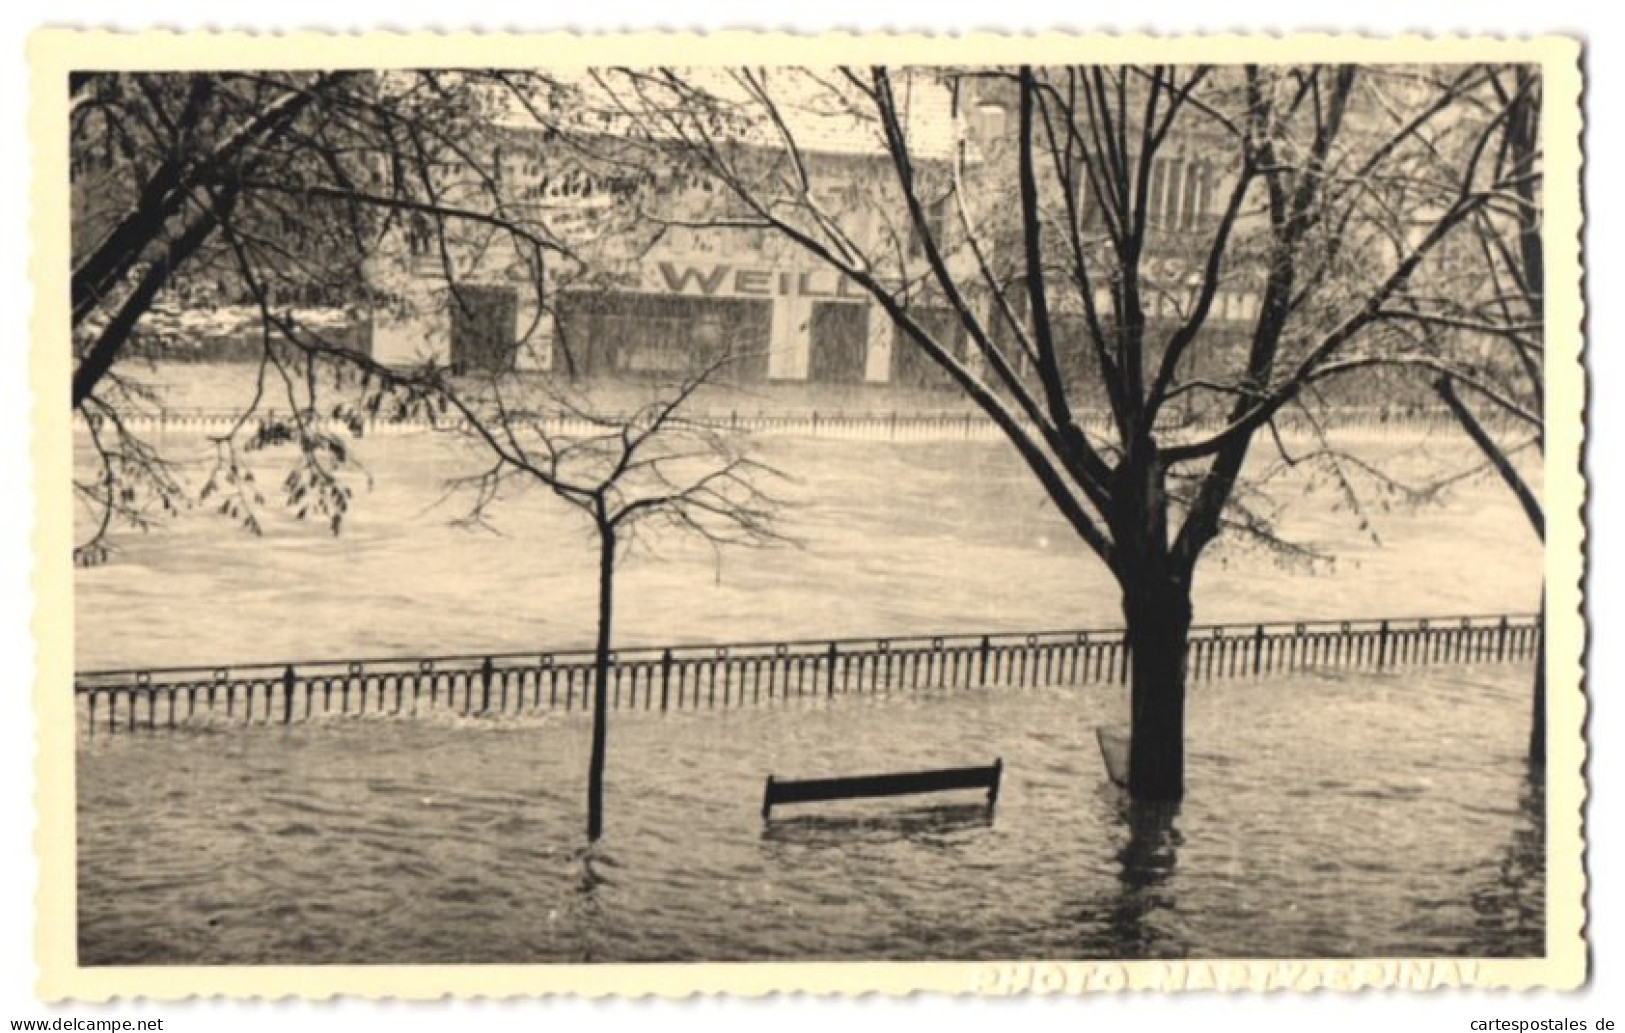 14 Photos Photographe inconnu,  vue de Epinal, inondation / Überschwemmung 1947, überflutete Strassen im Ort 